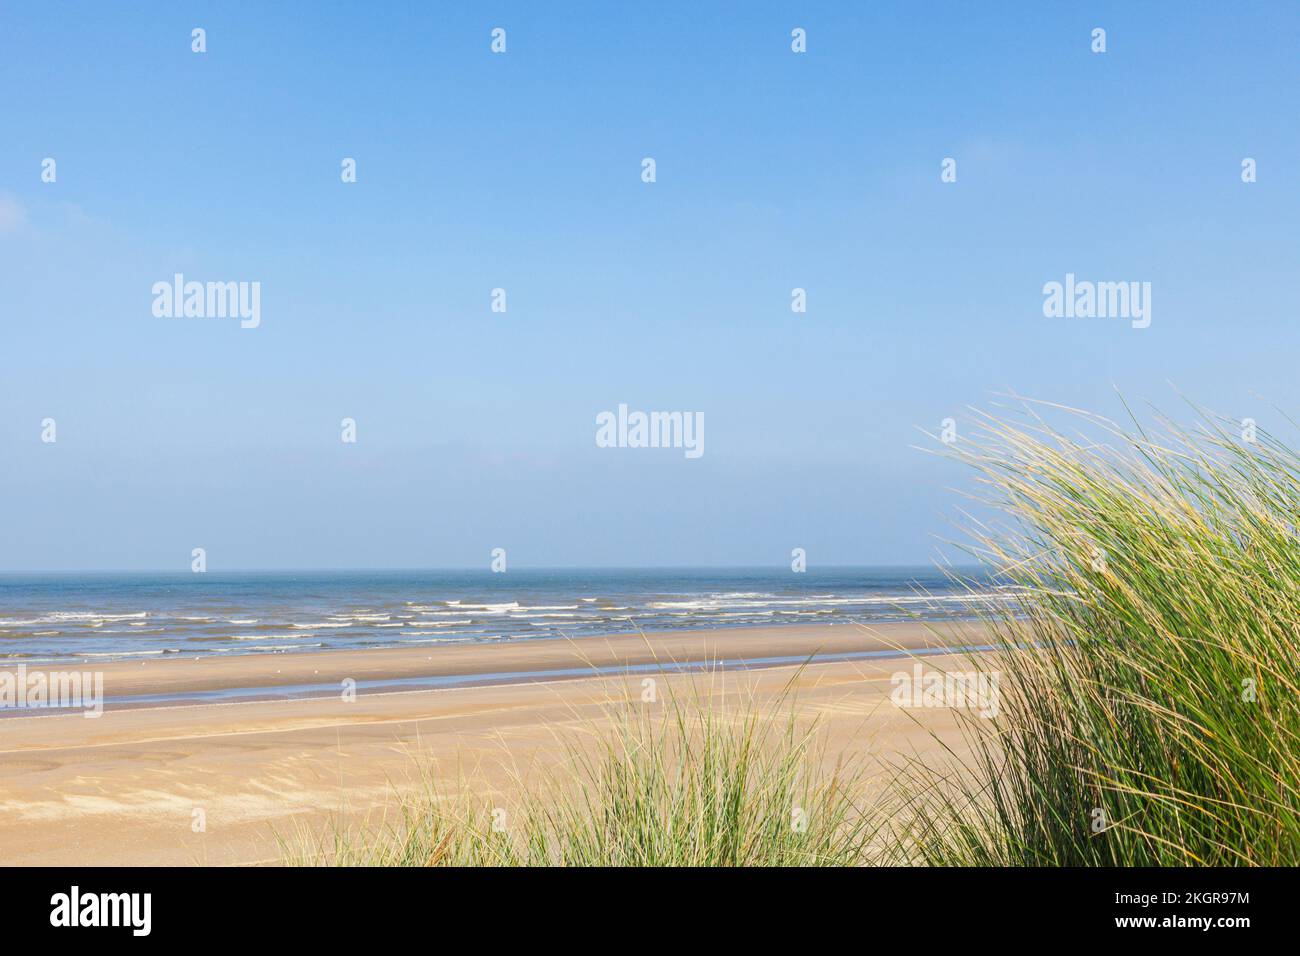 Belgique, Flandre Occidentale, Plage de sable avec ligne d'horizon claire au-dessus de la mer du Nord en arrière-plan Banque D'Images